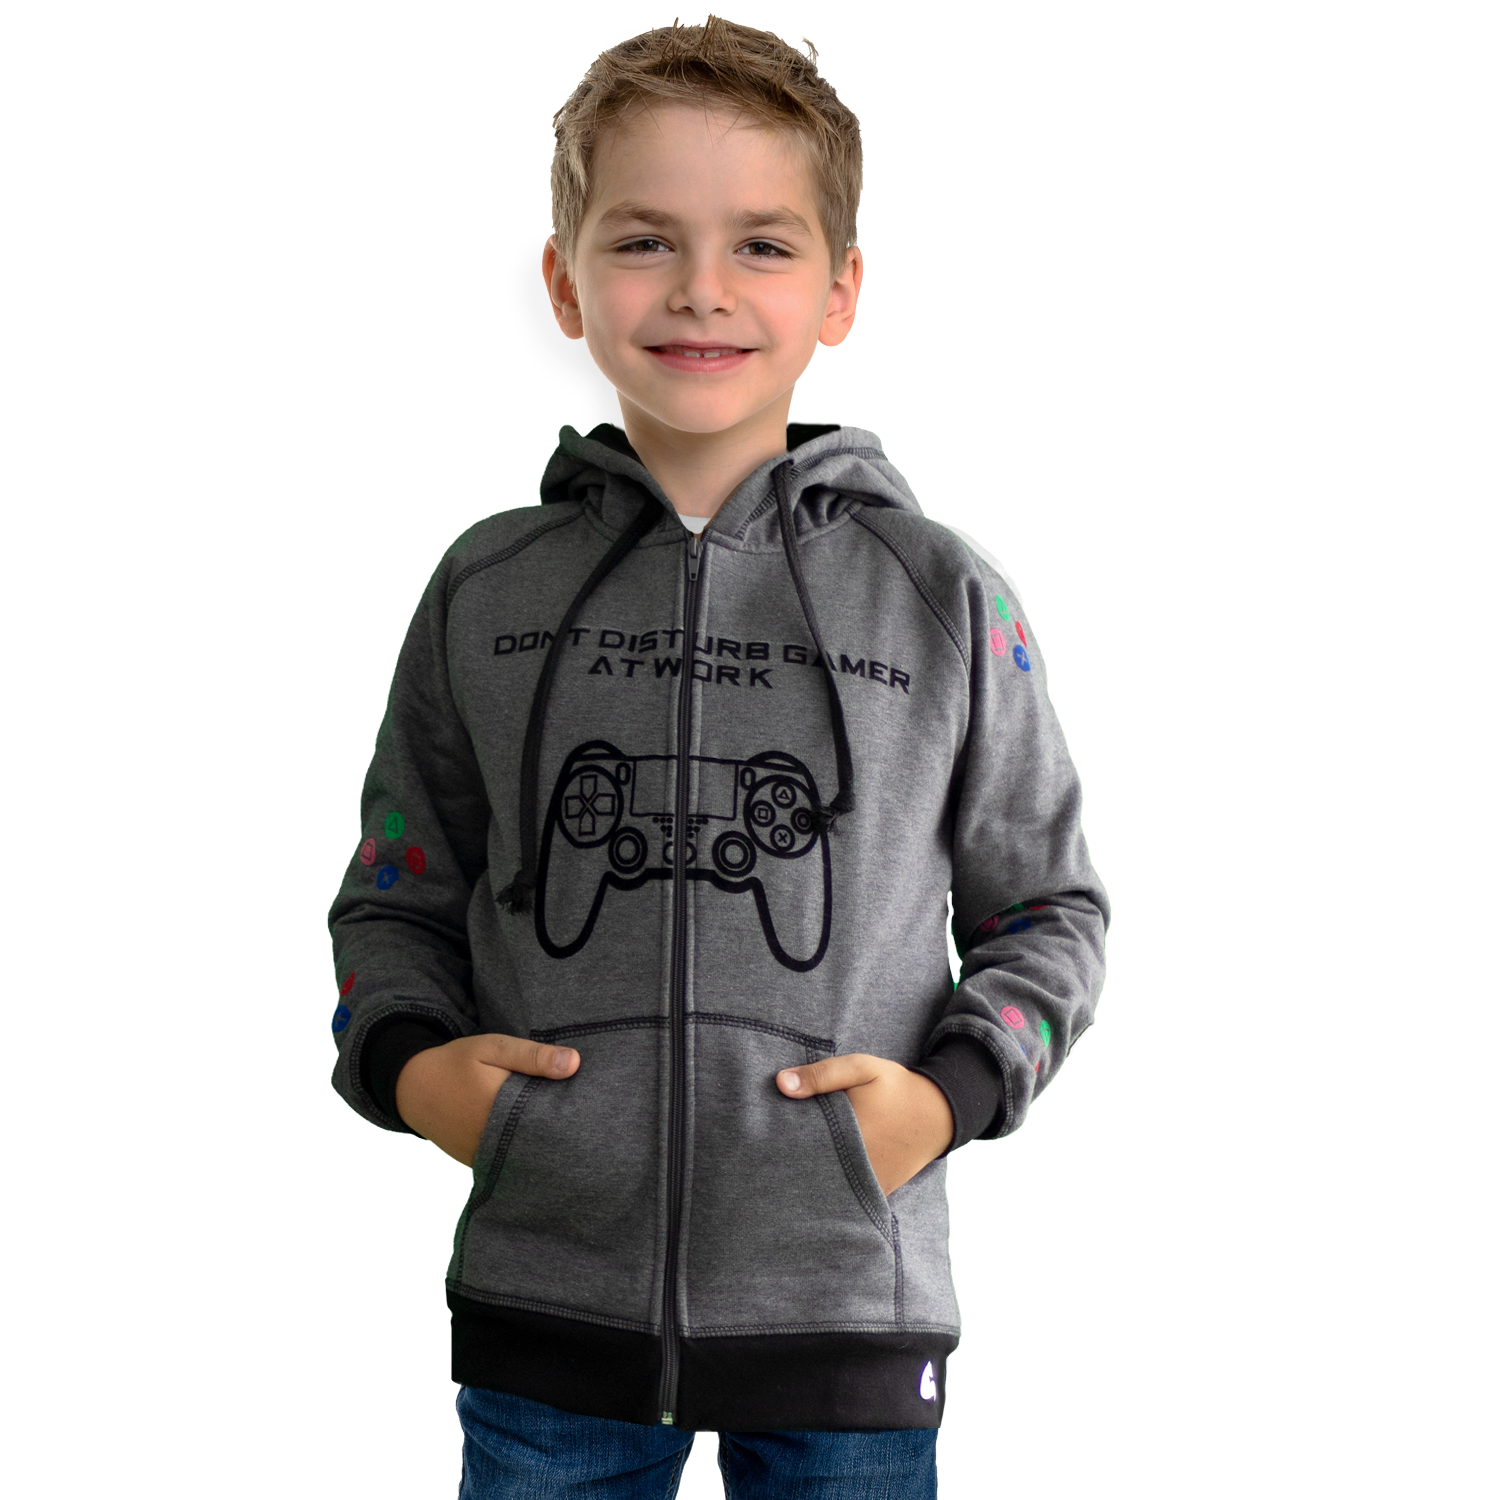 Niño vistiendo la chaqueta hoodie gris con control gamer estampado al frente y los comandos del control en los brazos.